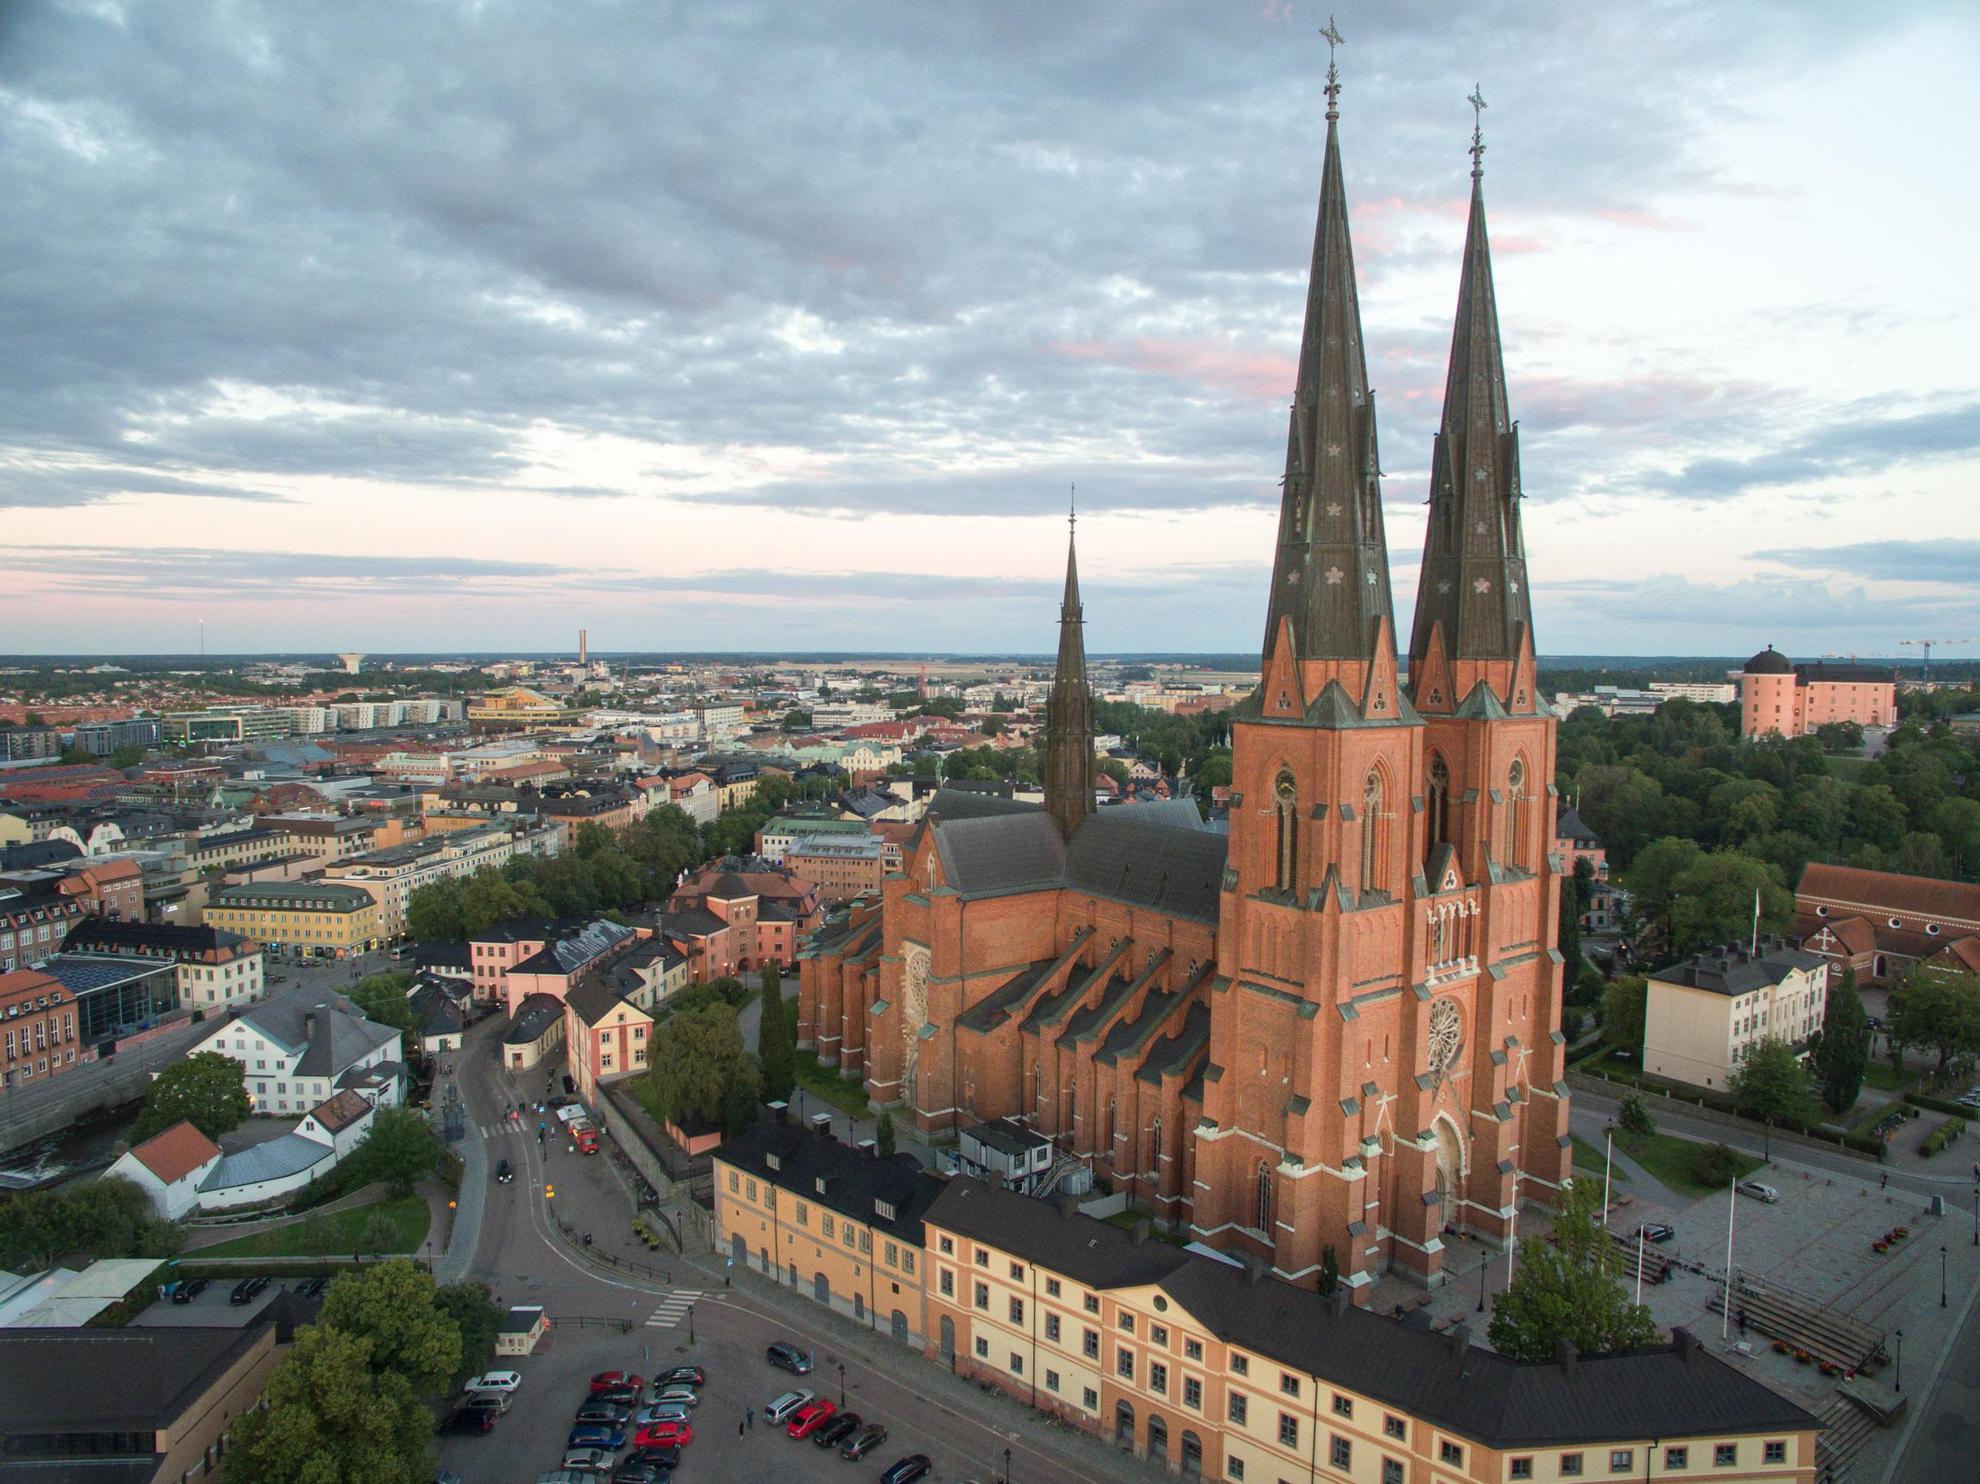 Kathedraal van Uppsala en de stad van bovenaf gezien.